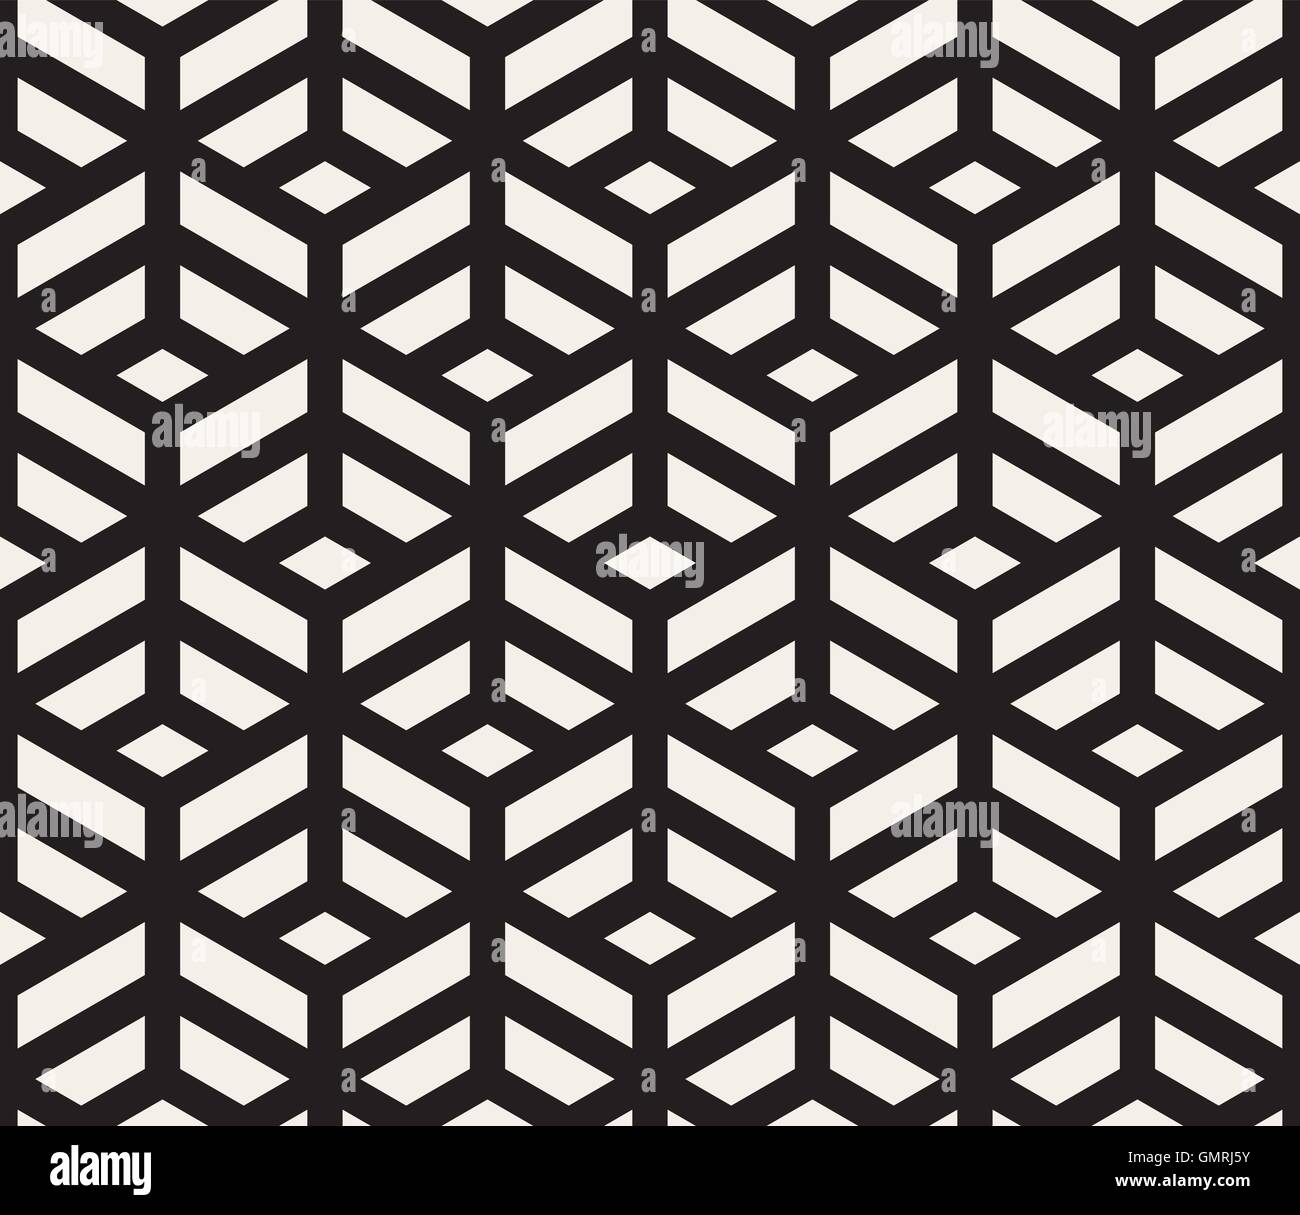 Vektor nahtlose schwarz-weiß geometrische Fliesen Muster isometrische Linienraster Stock Vektor